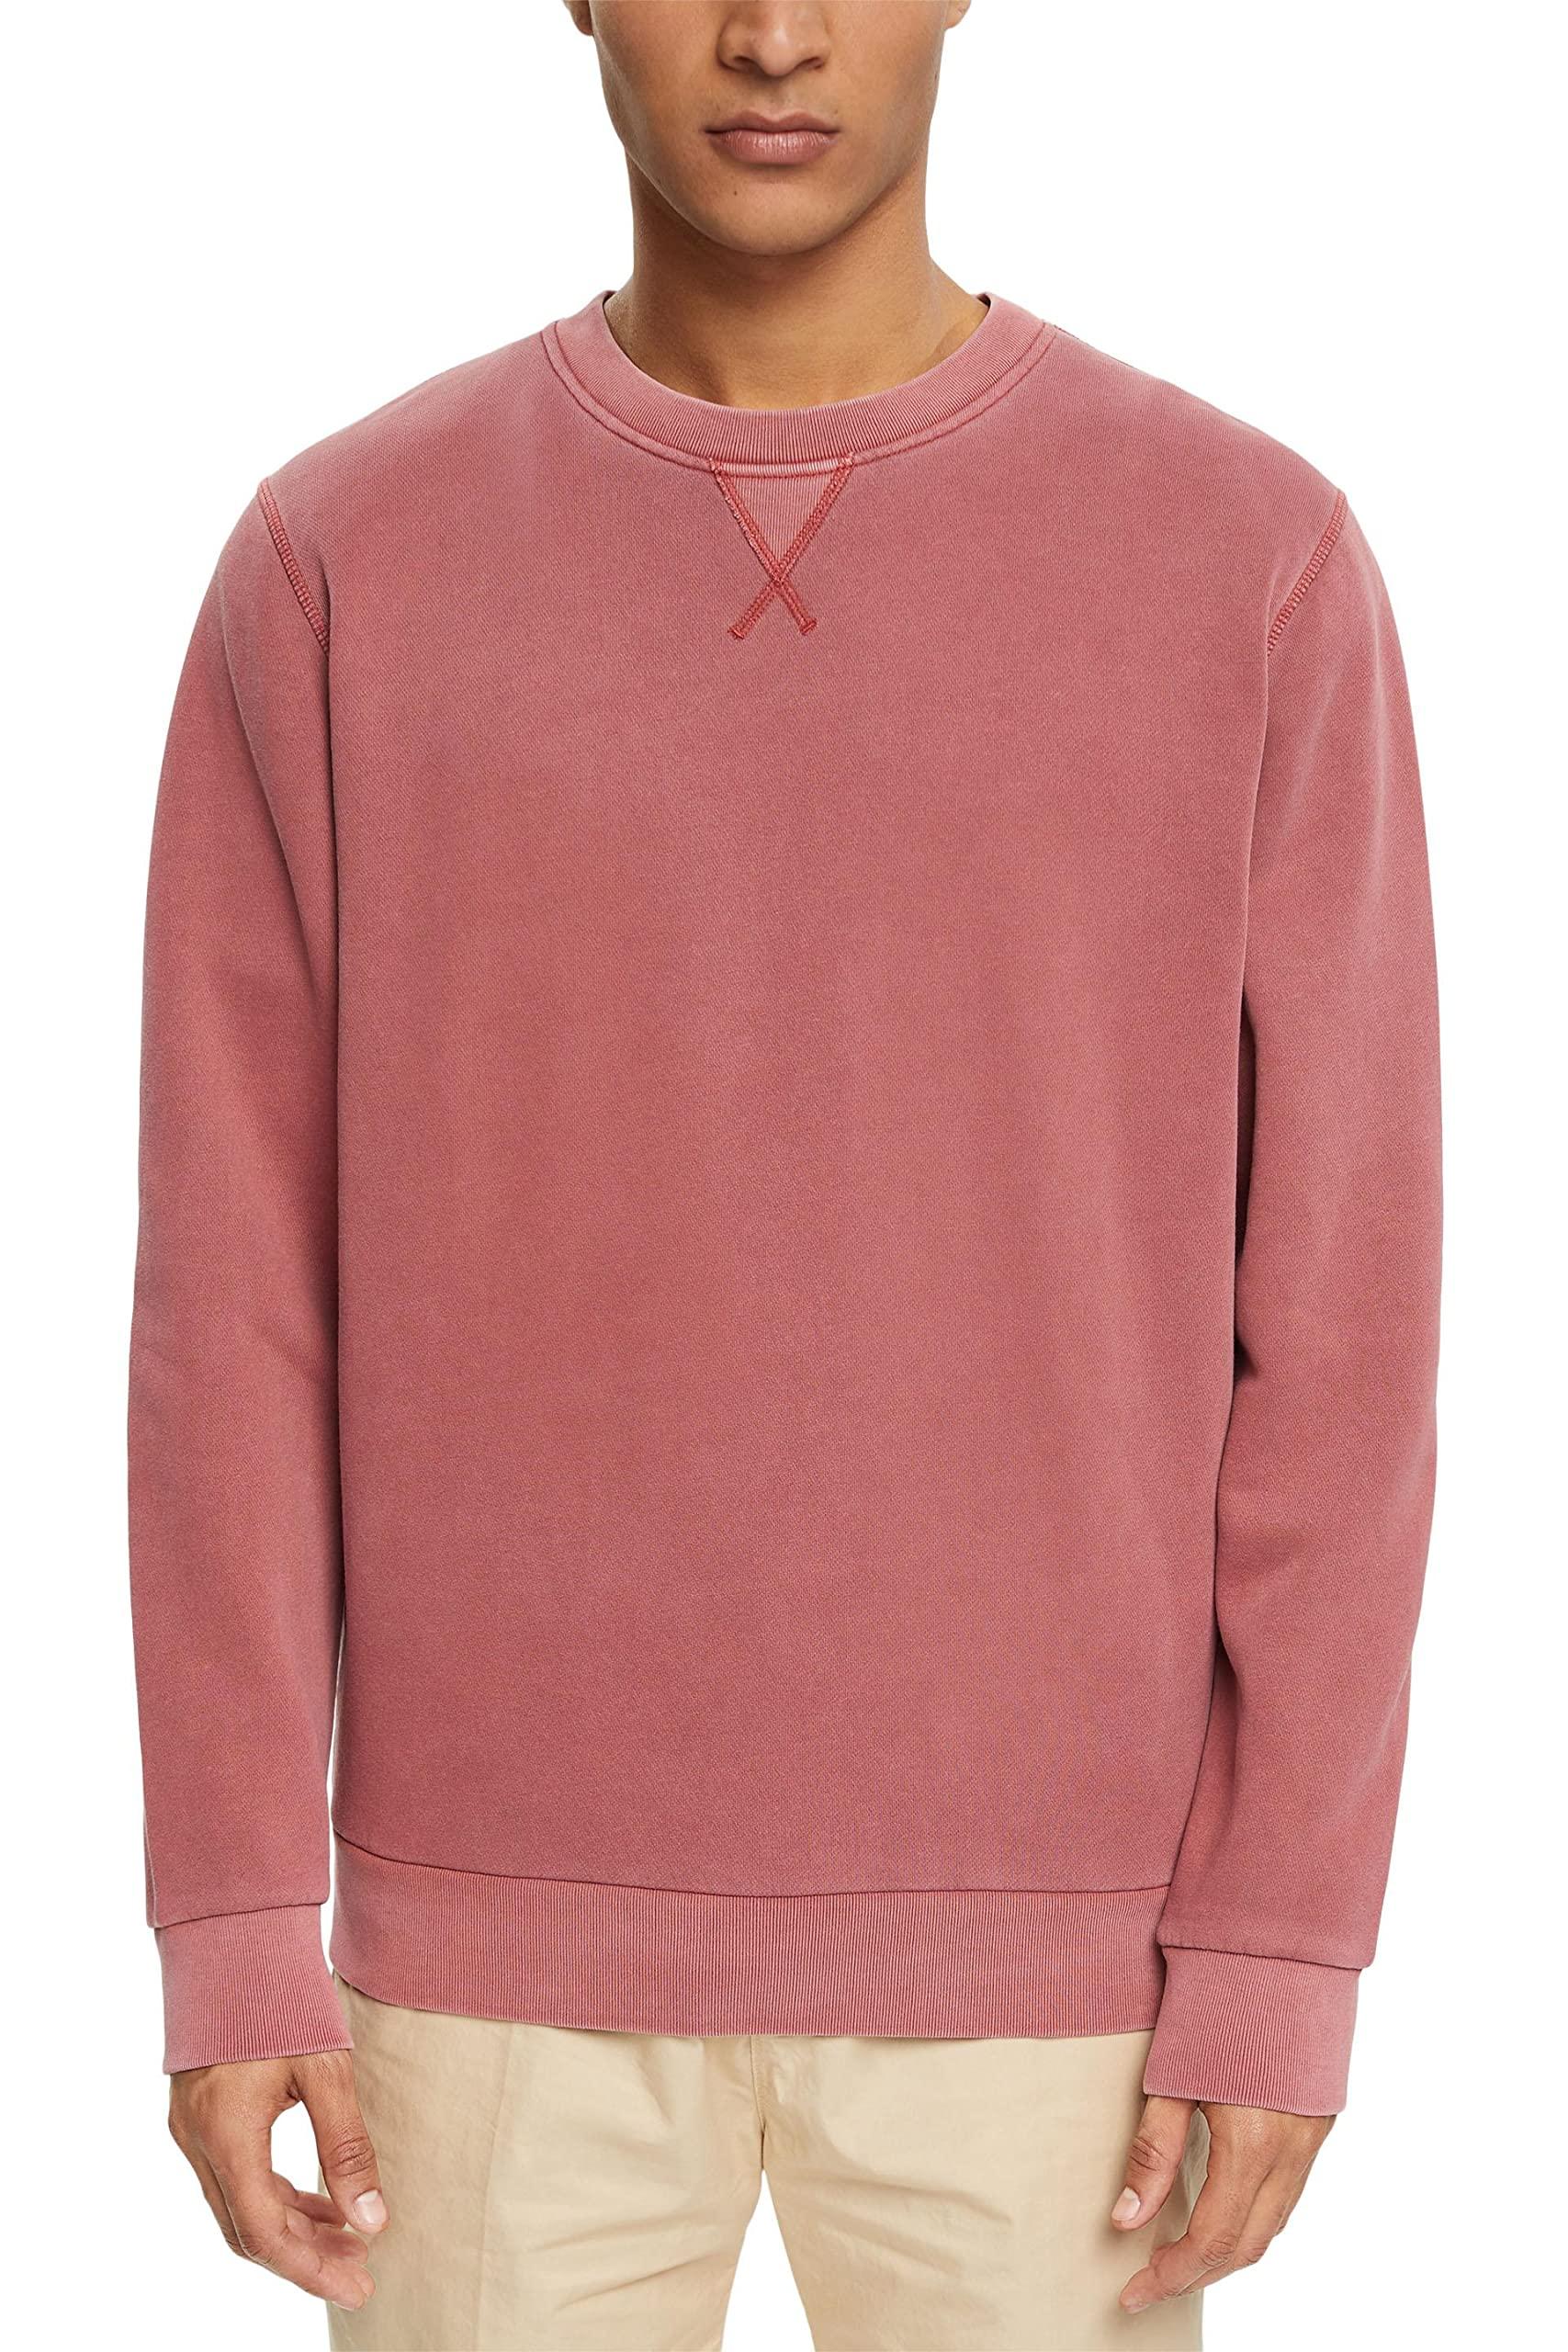 Esprit 992ee2j302 Sweatshirt in Pink for Men | Lyst UK